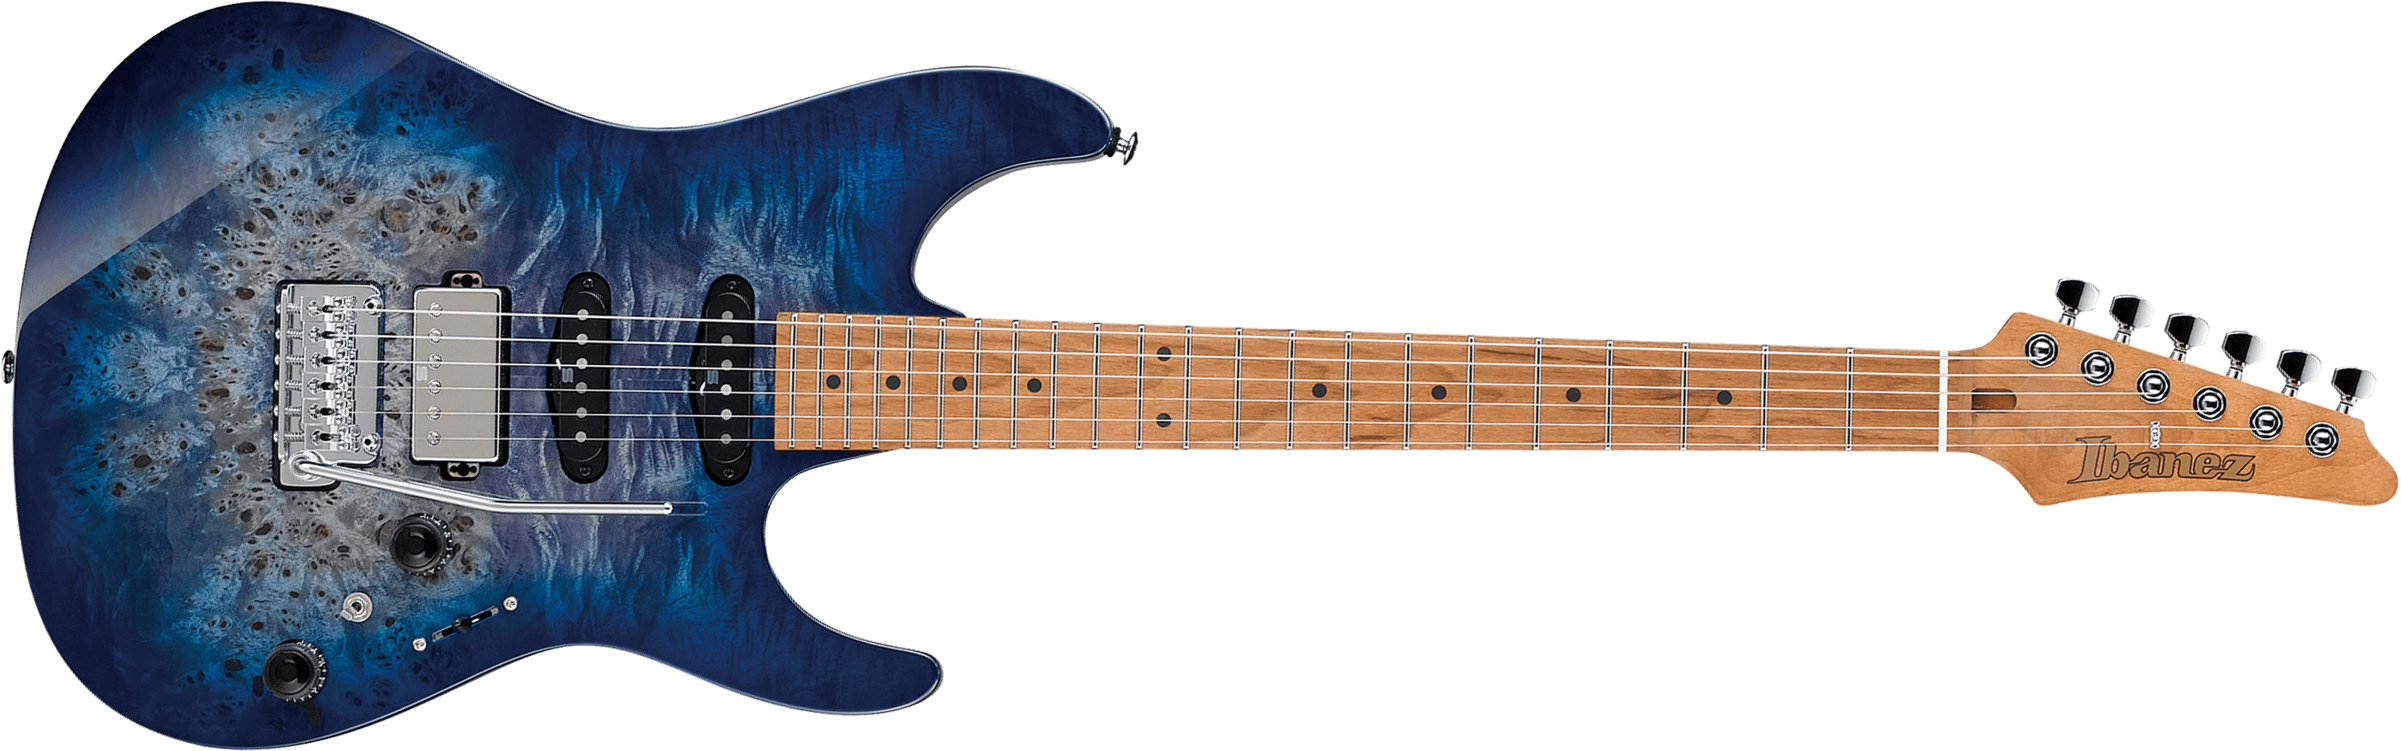 Ibanez Az226pb Cbb Premium Hss Trem Mn - Cerulean Blue Burst - Double cut electric guitar - Main picture